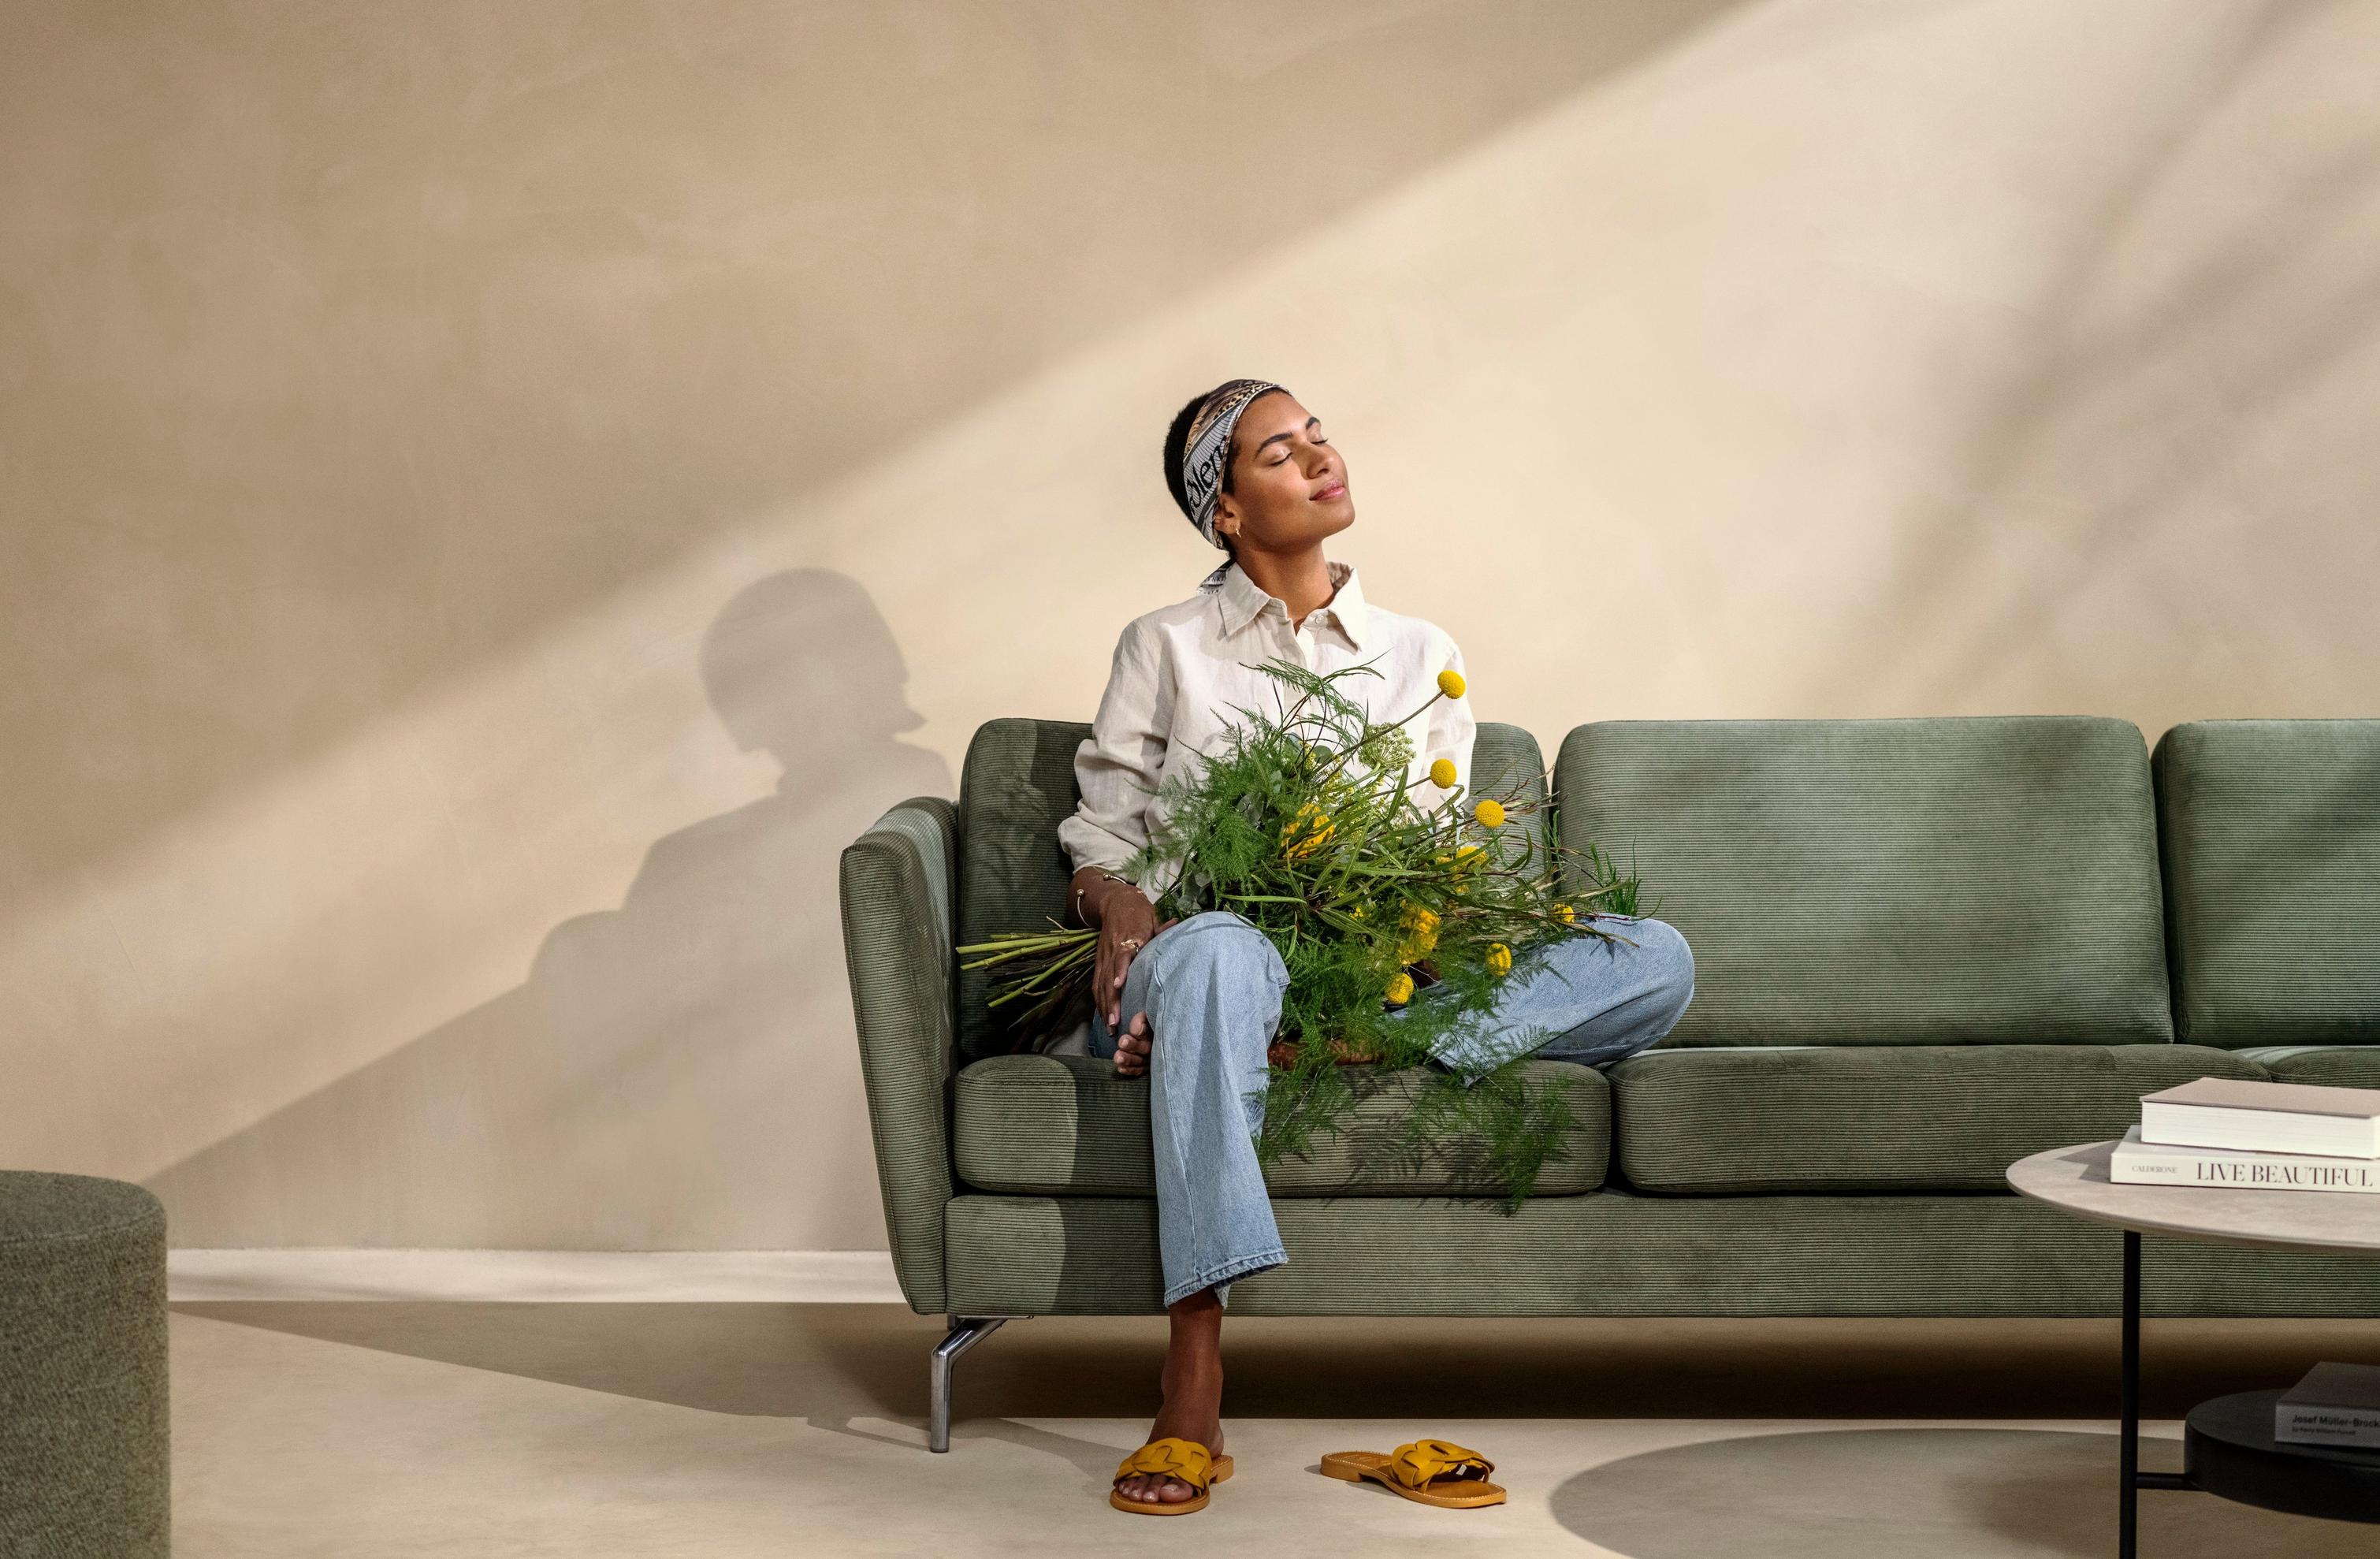 グリーンのSkagen ファブリックを使ったOsaka ソファに座り、花を抱える女性。